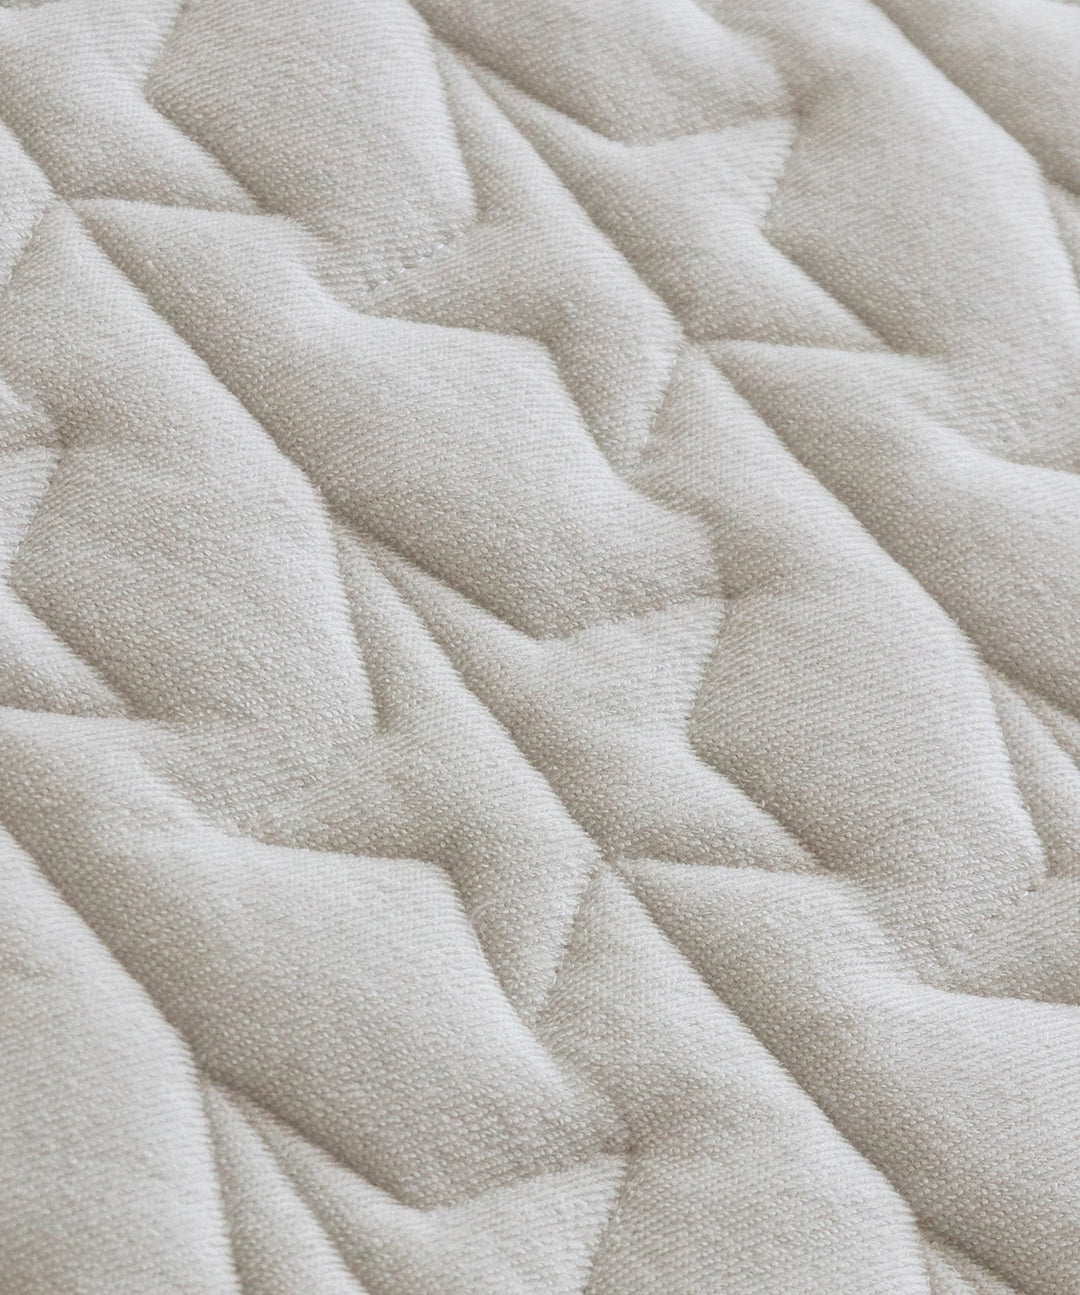 [รุ่นกันน้ำ] แผ่นรองนอนสำหรับเสื่อนอนอเนกประสงค์ (ผ้ากำมะหยี่) 120x120ซ.ม.